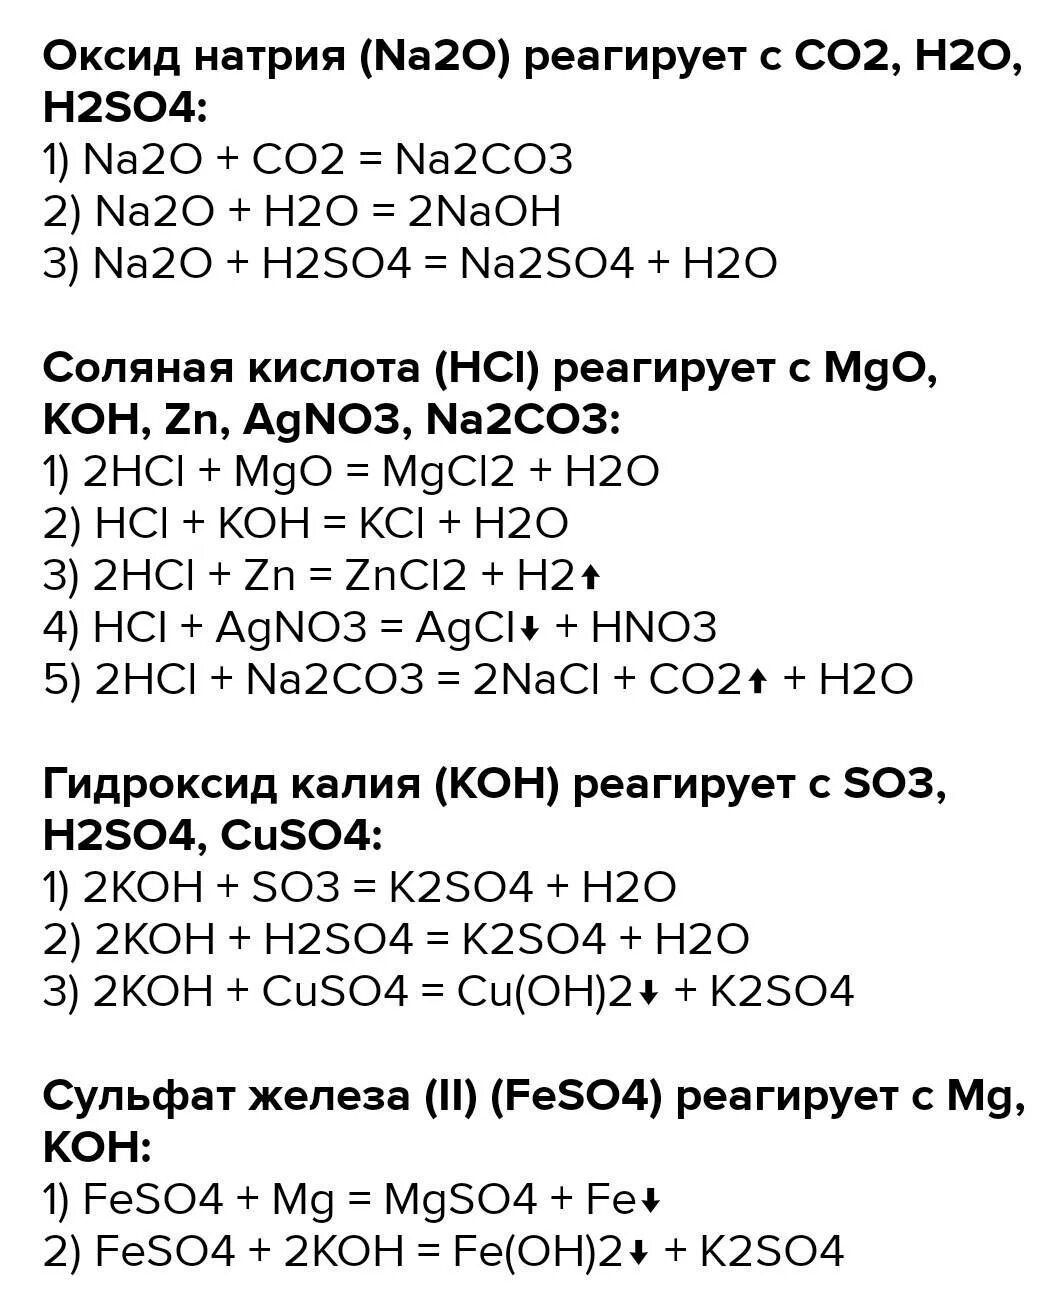 Реакция h2s+na. K+h2so4 уравнение химической реакции. Na2co3 реакция. Koh уравнение реакции. S koh уравнение реакции